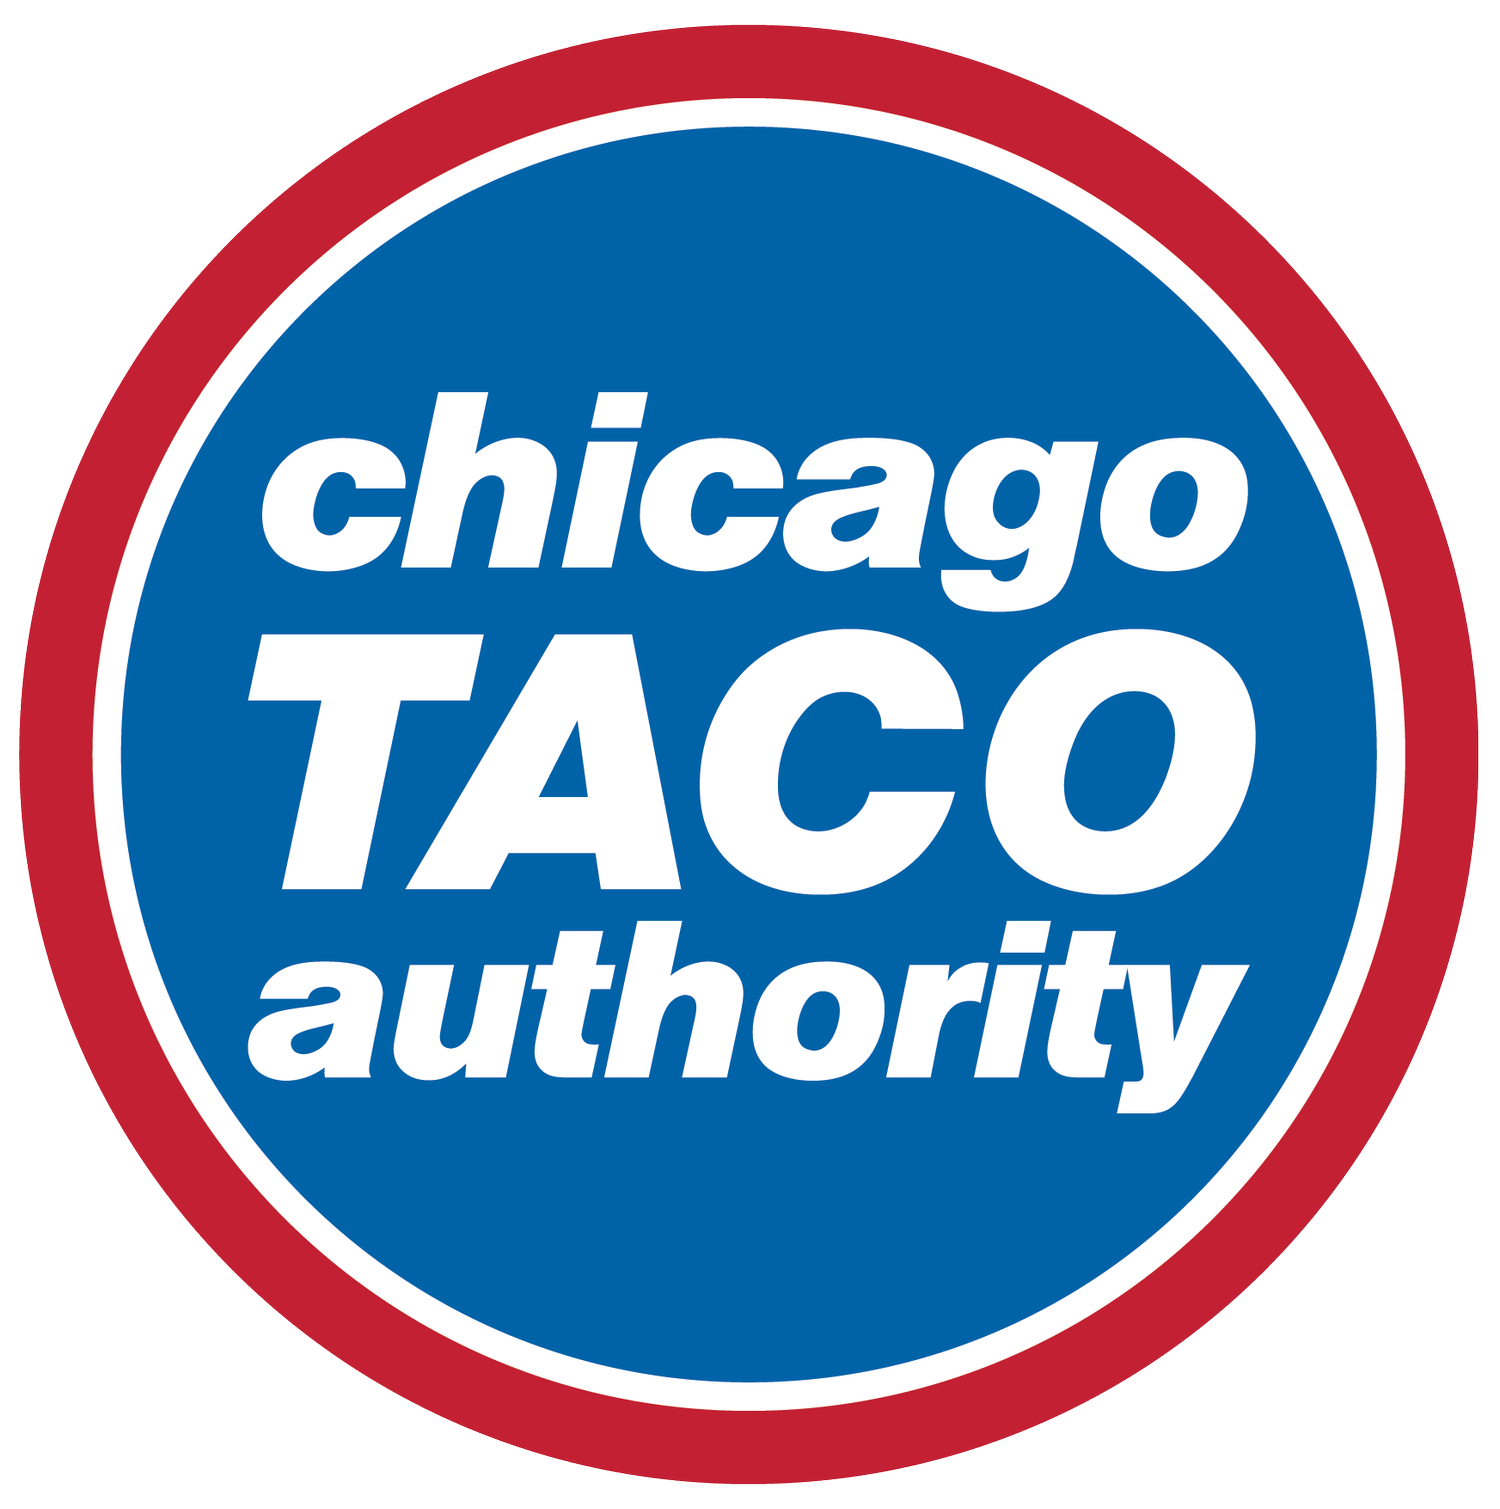 Chicago Taco Authority